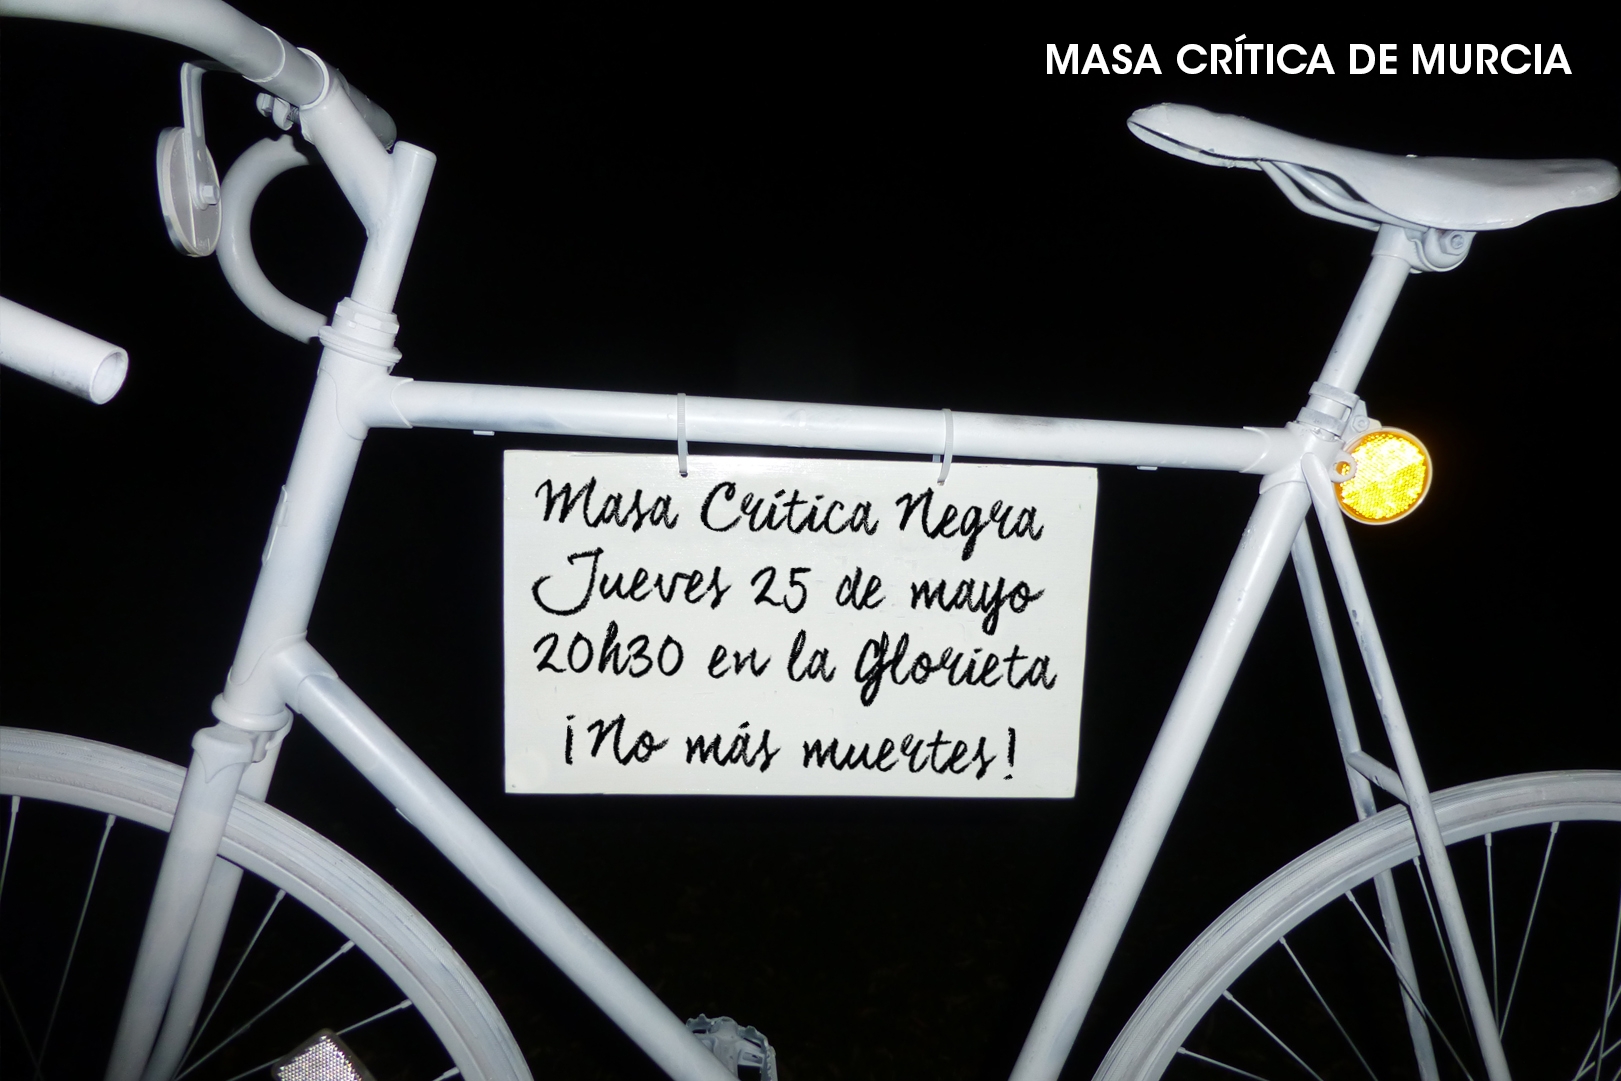 Masa Crítica Ciclista Negra, con Masa Crítica de Murcia